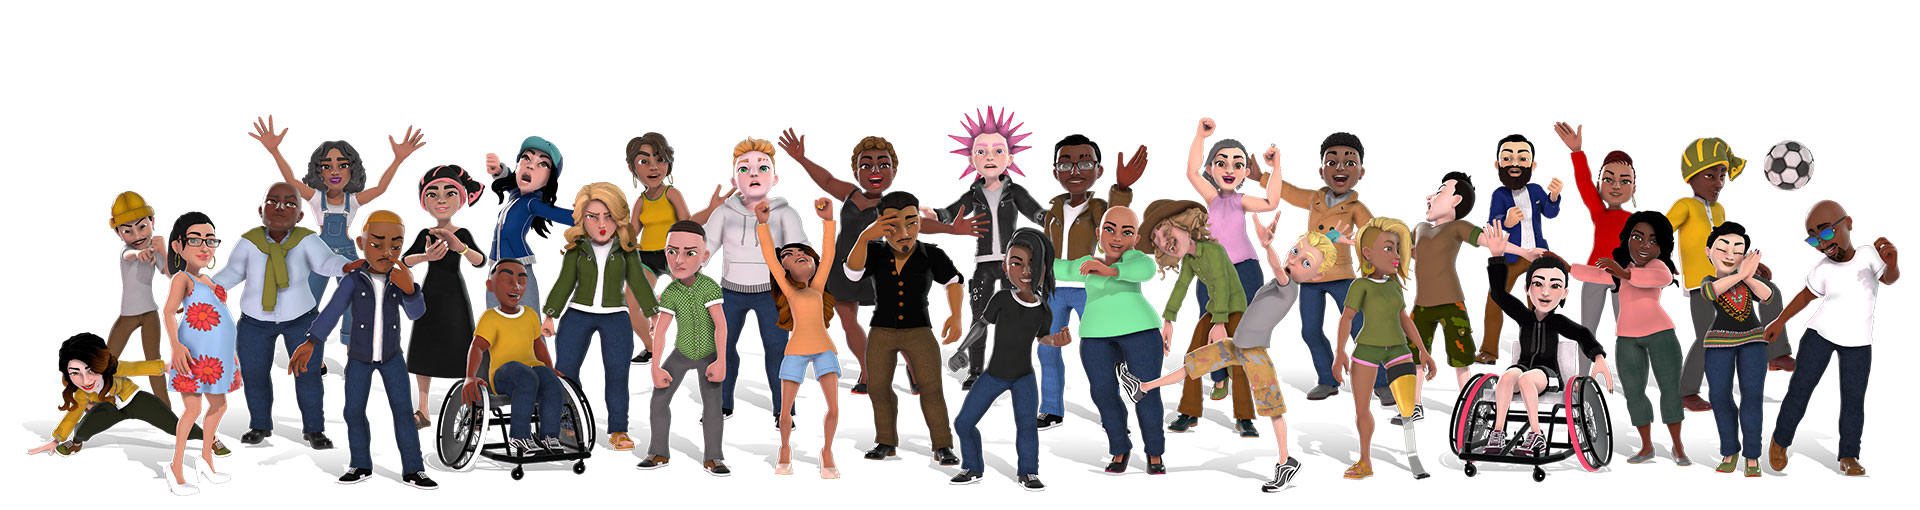 Avatares da Xbox com um grupo diverso de pessoas com roupas diferentes